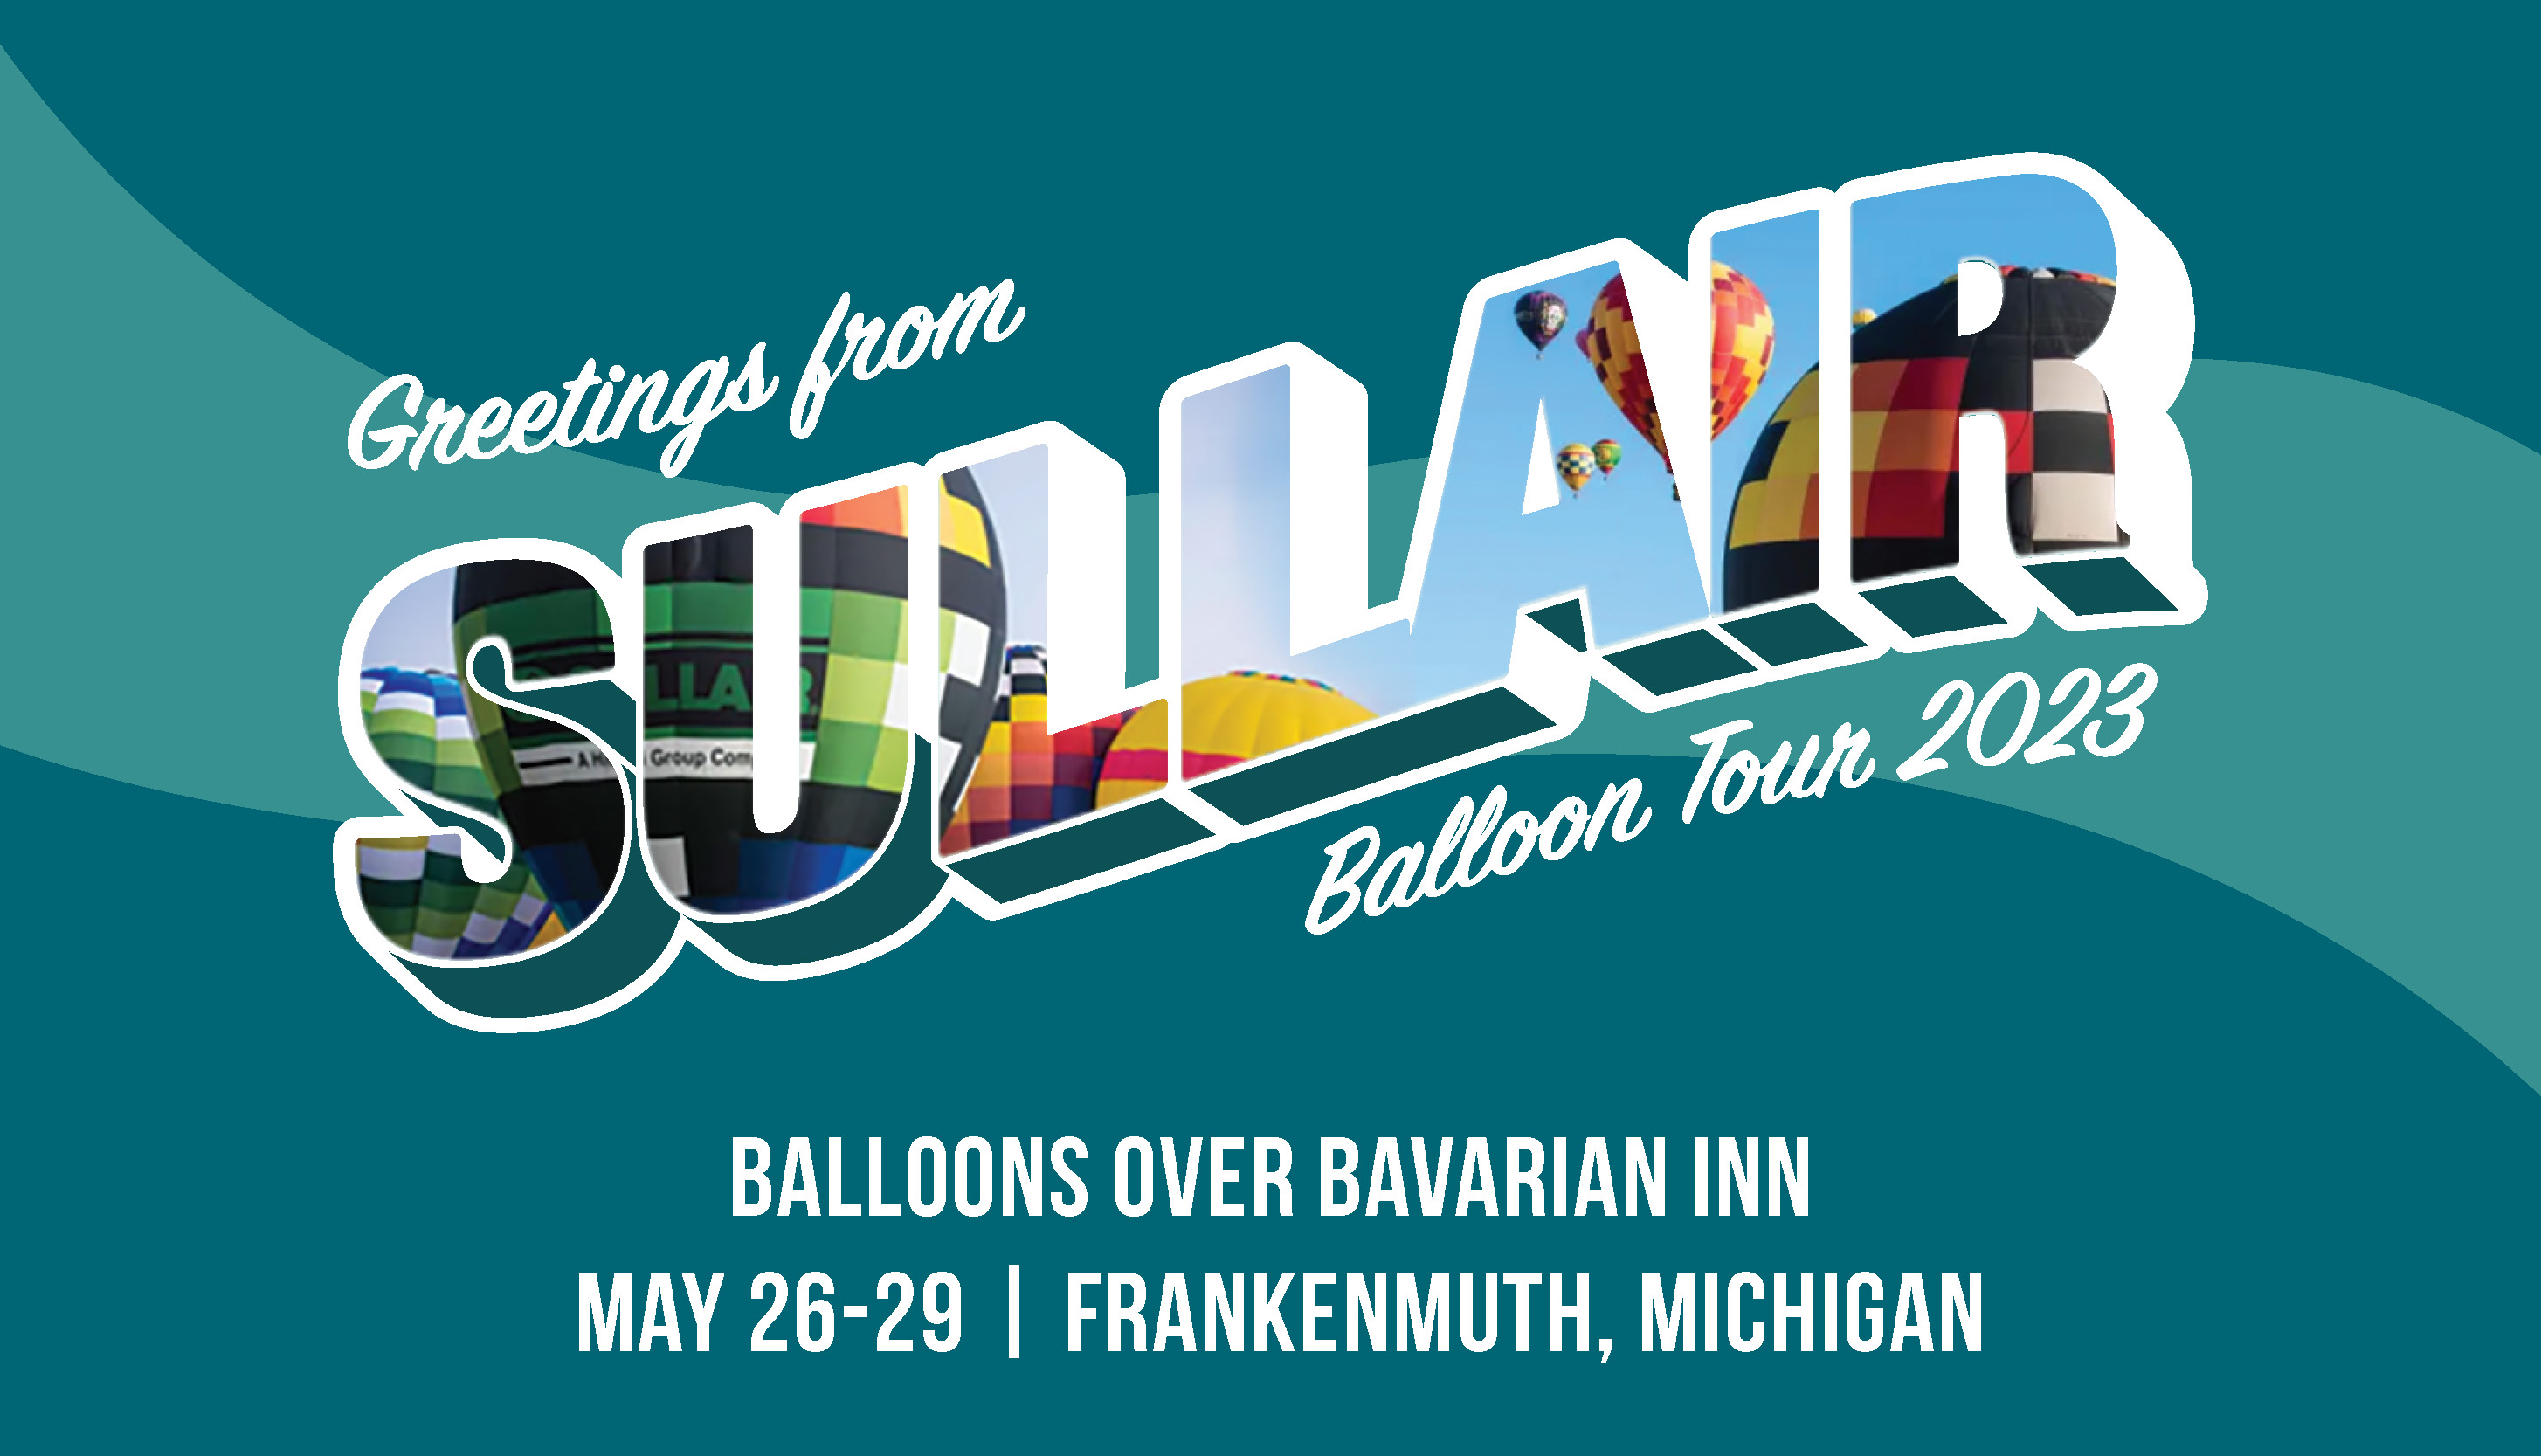 Balloons Over Bavarian Inn